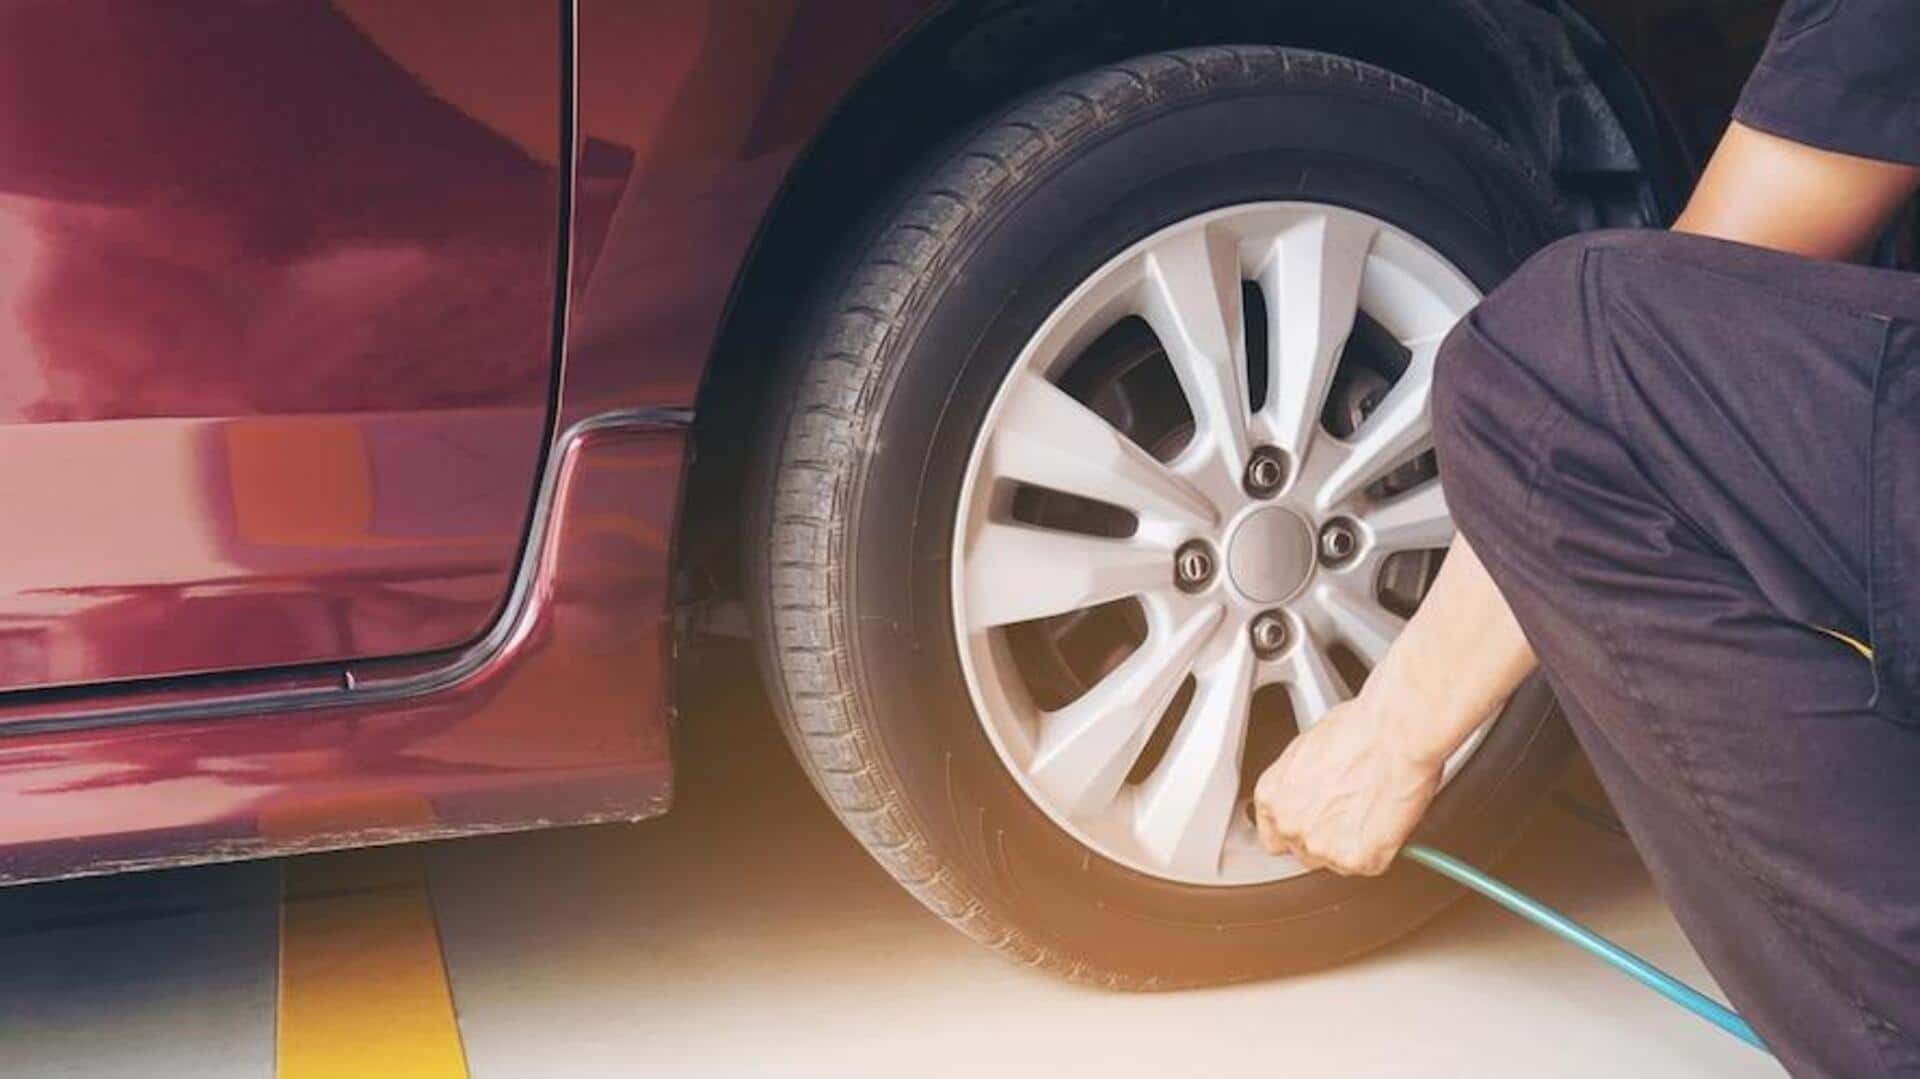 कार में ट्यूबलेस टायर लगवाना चाहते हैं? जानें इसके फायदे और नुकसान 